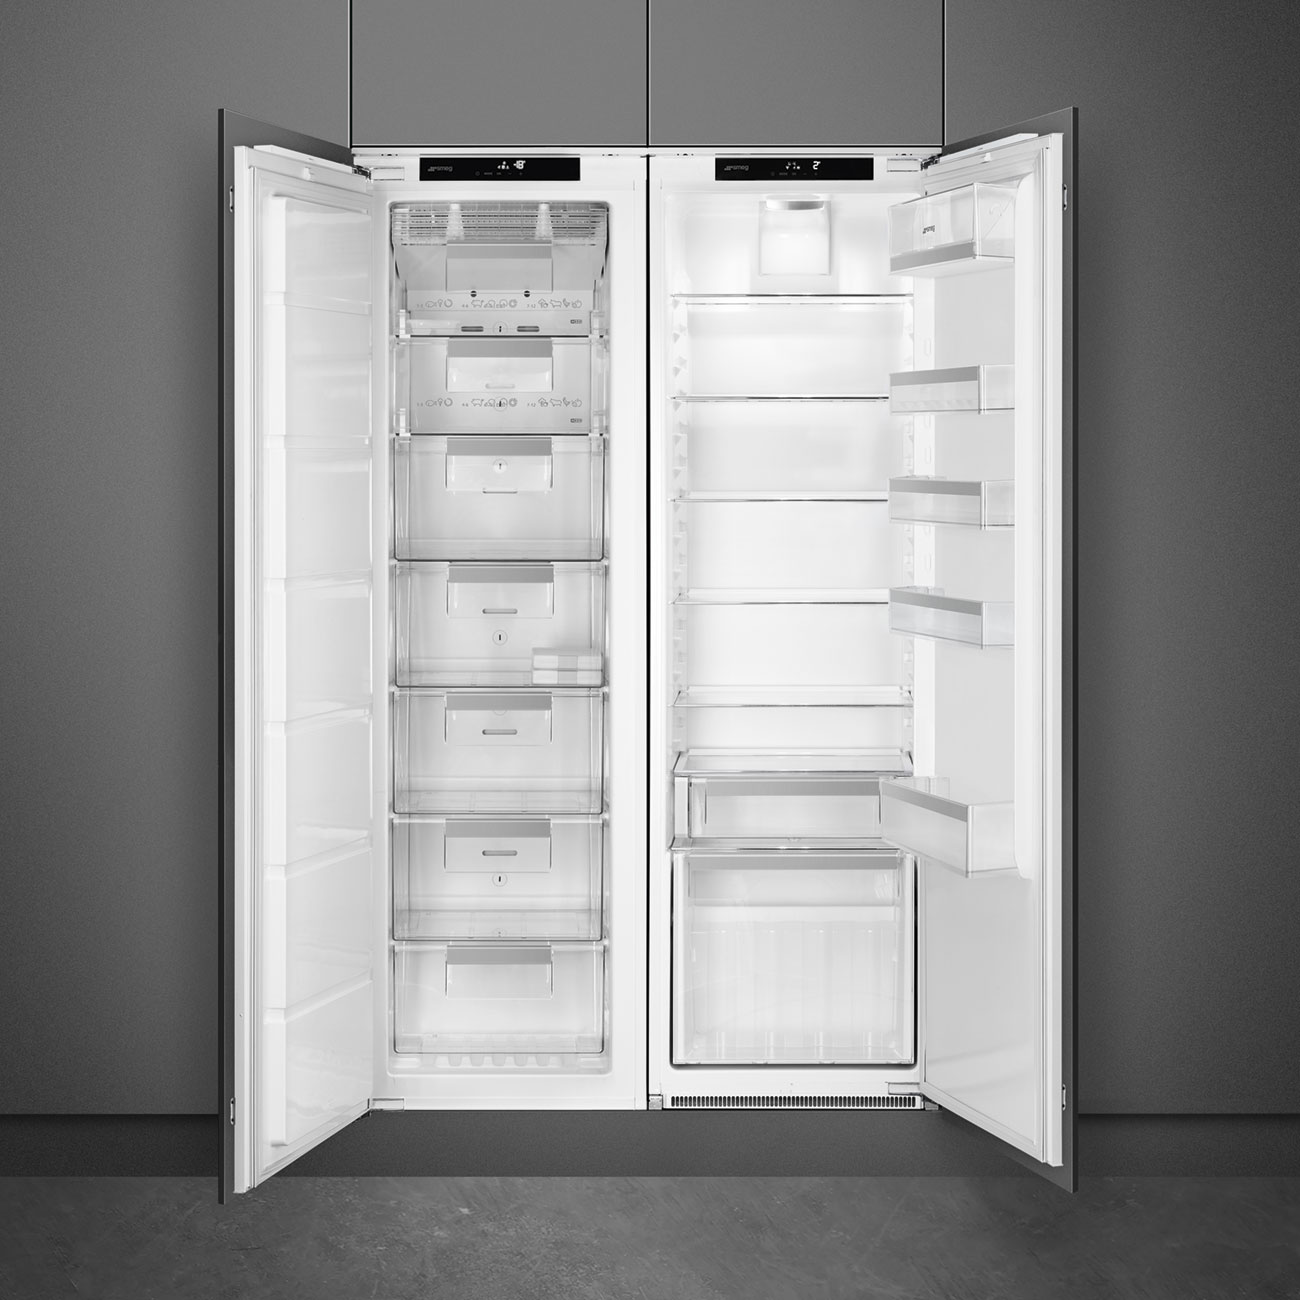 One Door Built-in refrigerator - Smeg_2